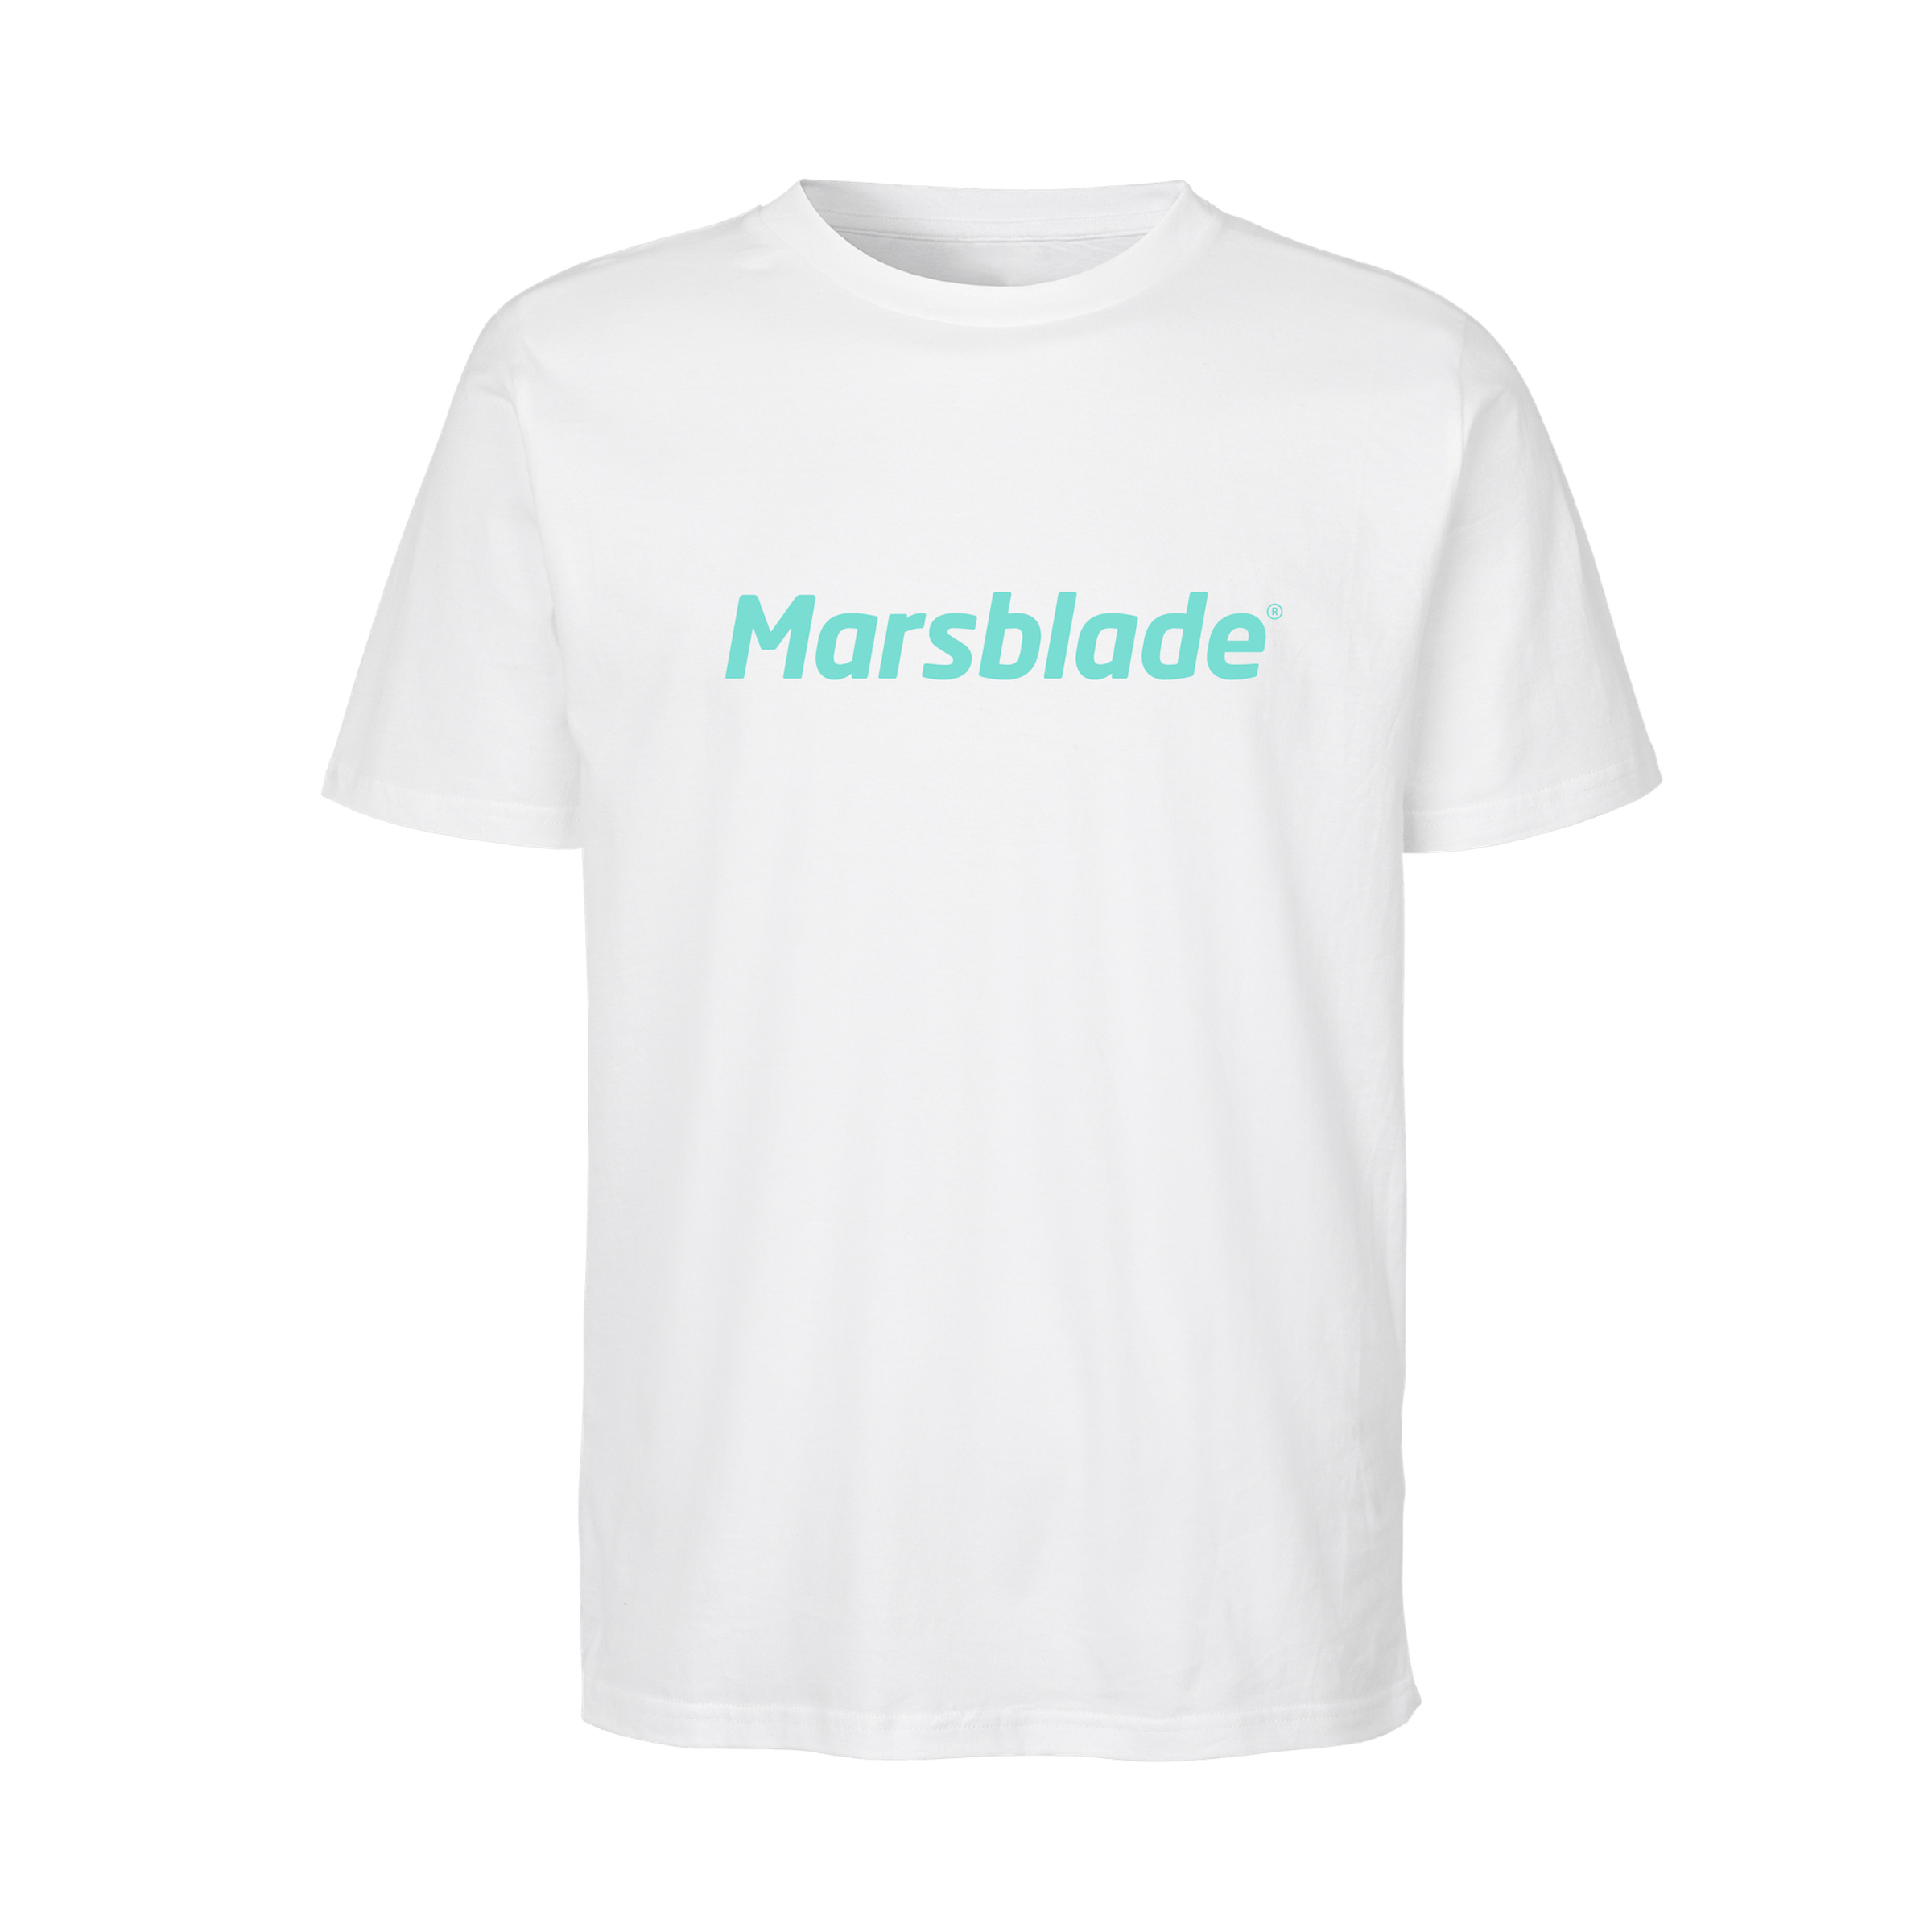 Marsblade T-Shirt - White